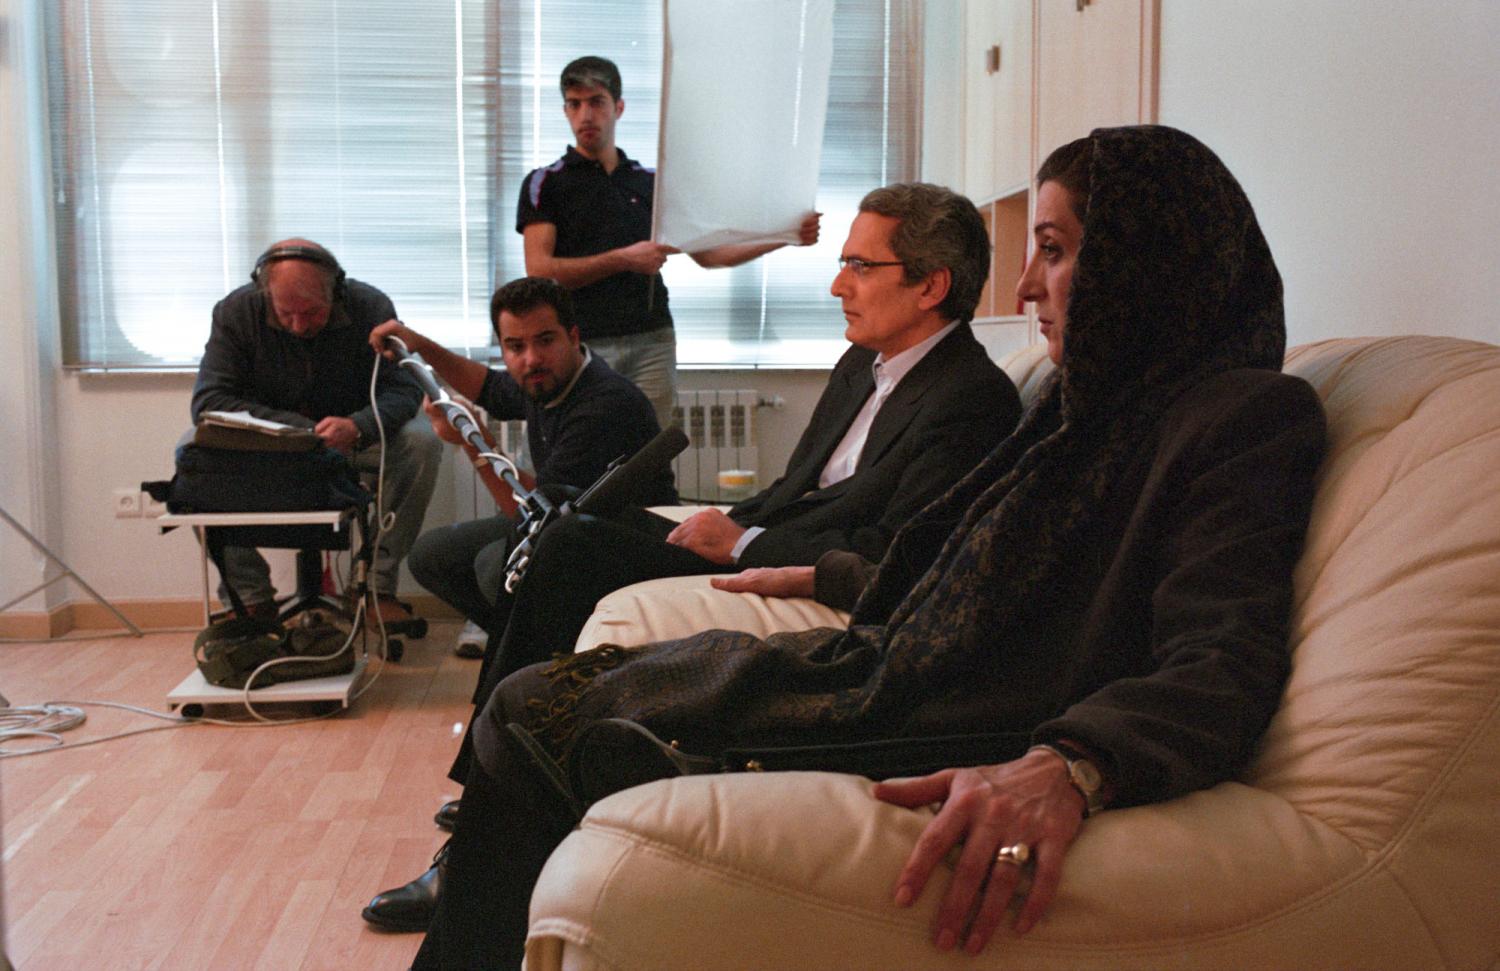 Fatemeh Motamedarya et son partenaire jouent la scène d'un film. Téhéran, Iran, décembre 2006.